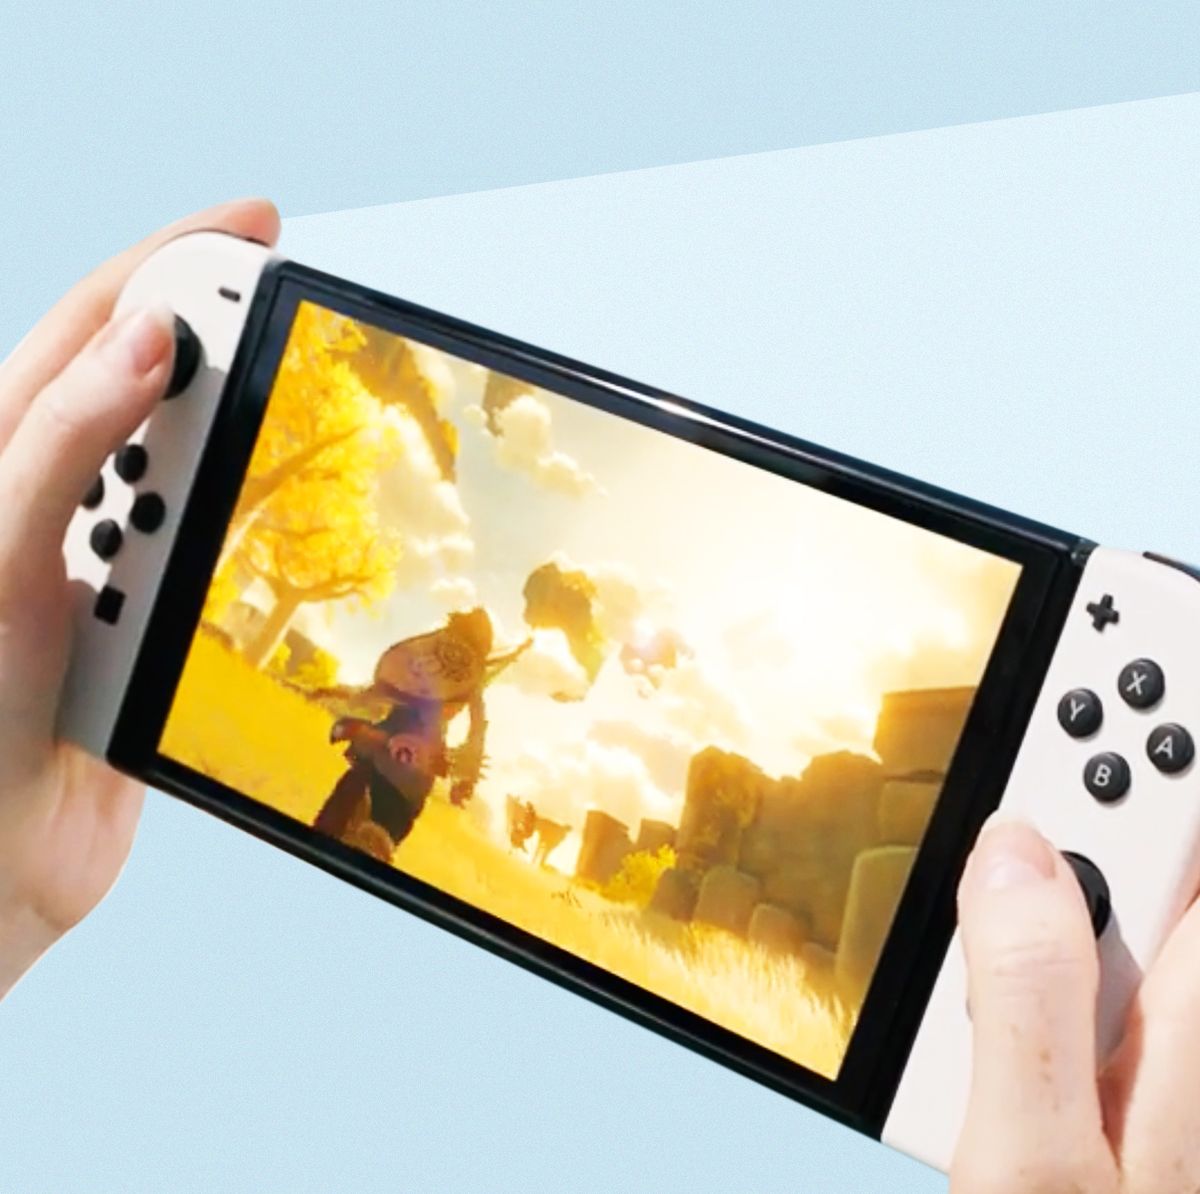 Vendo Nintendo switch com conta Nintendo online de 1 ano